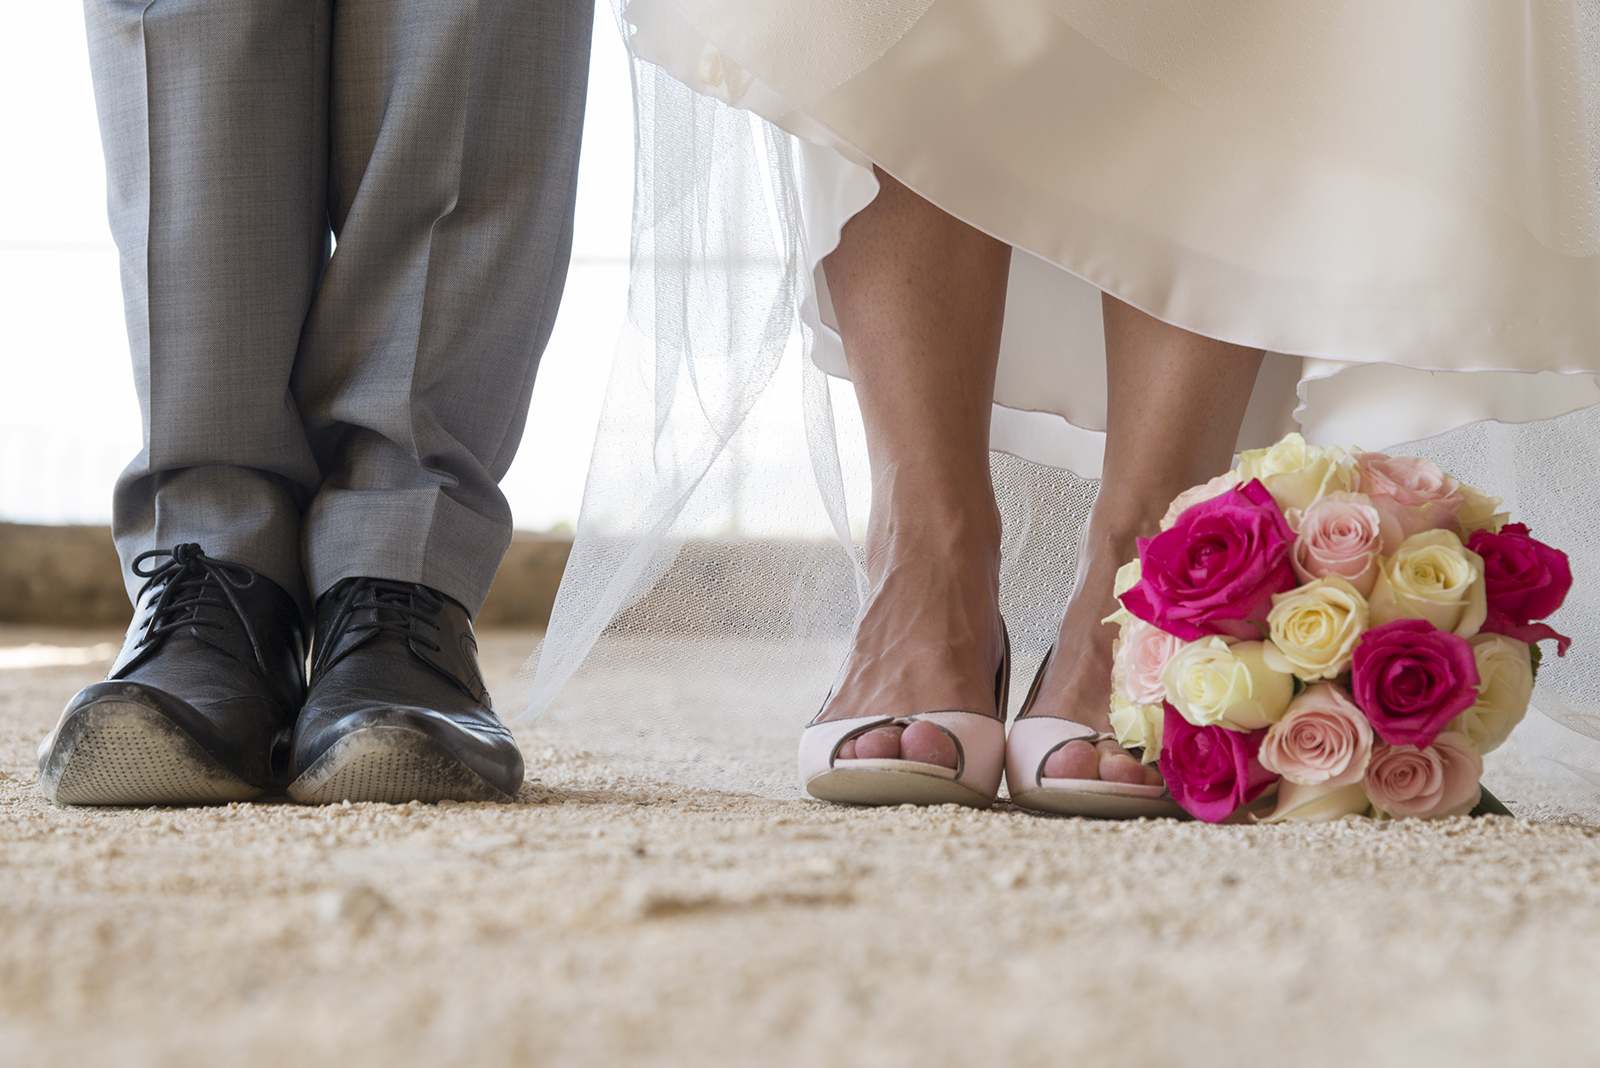 pieds de mariés et bouquet de roses